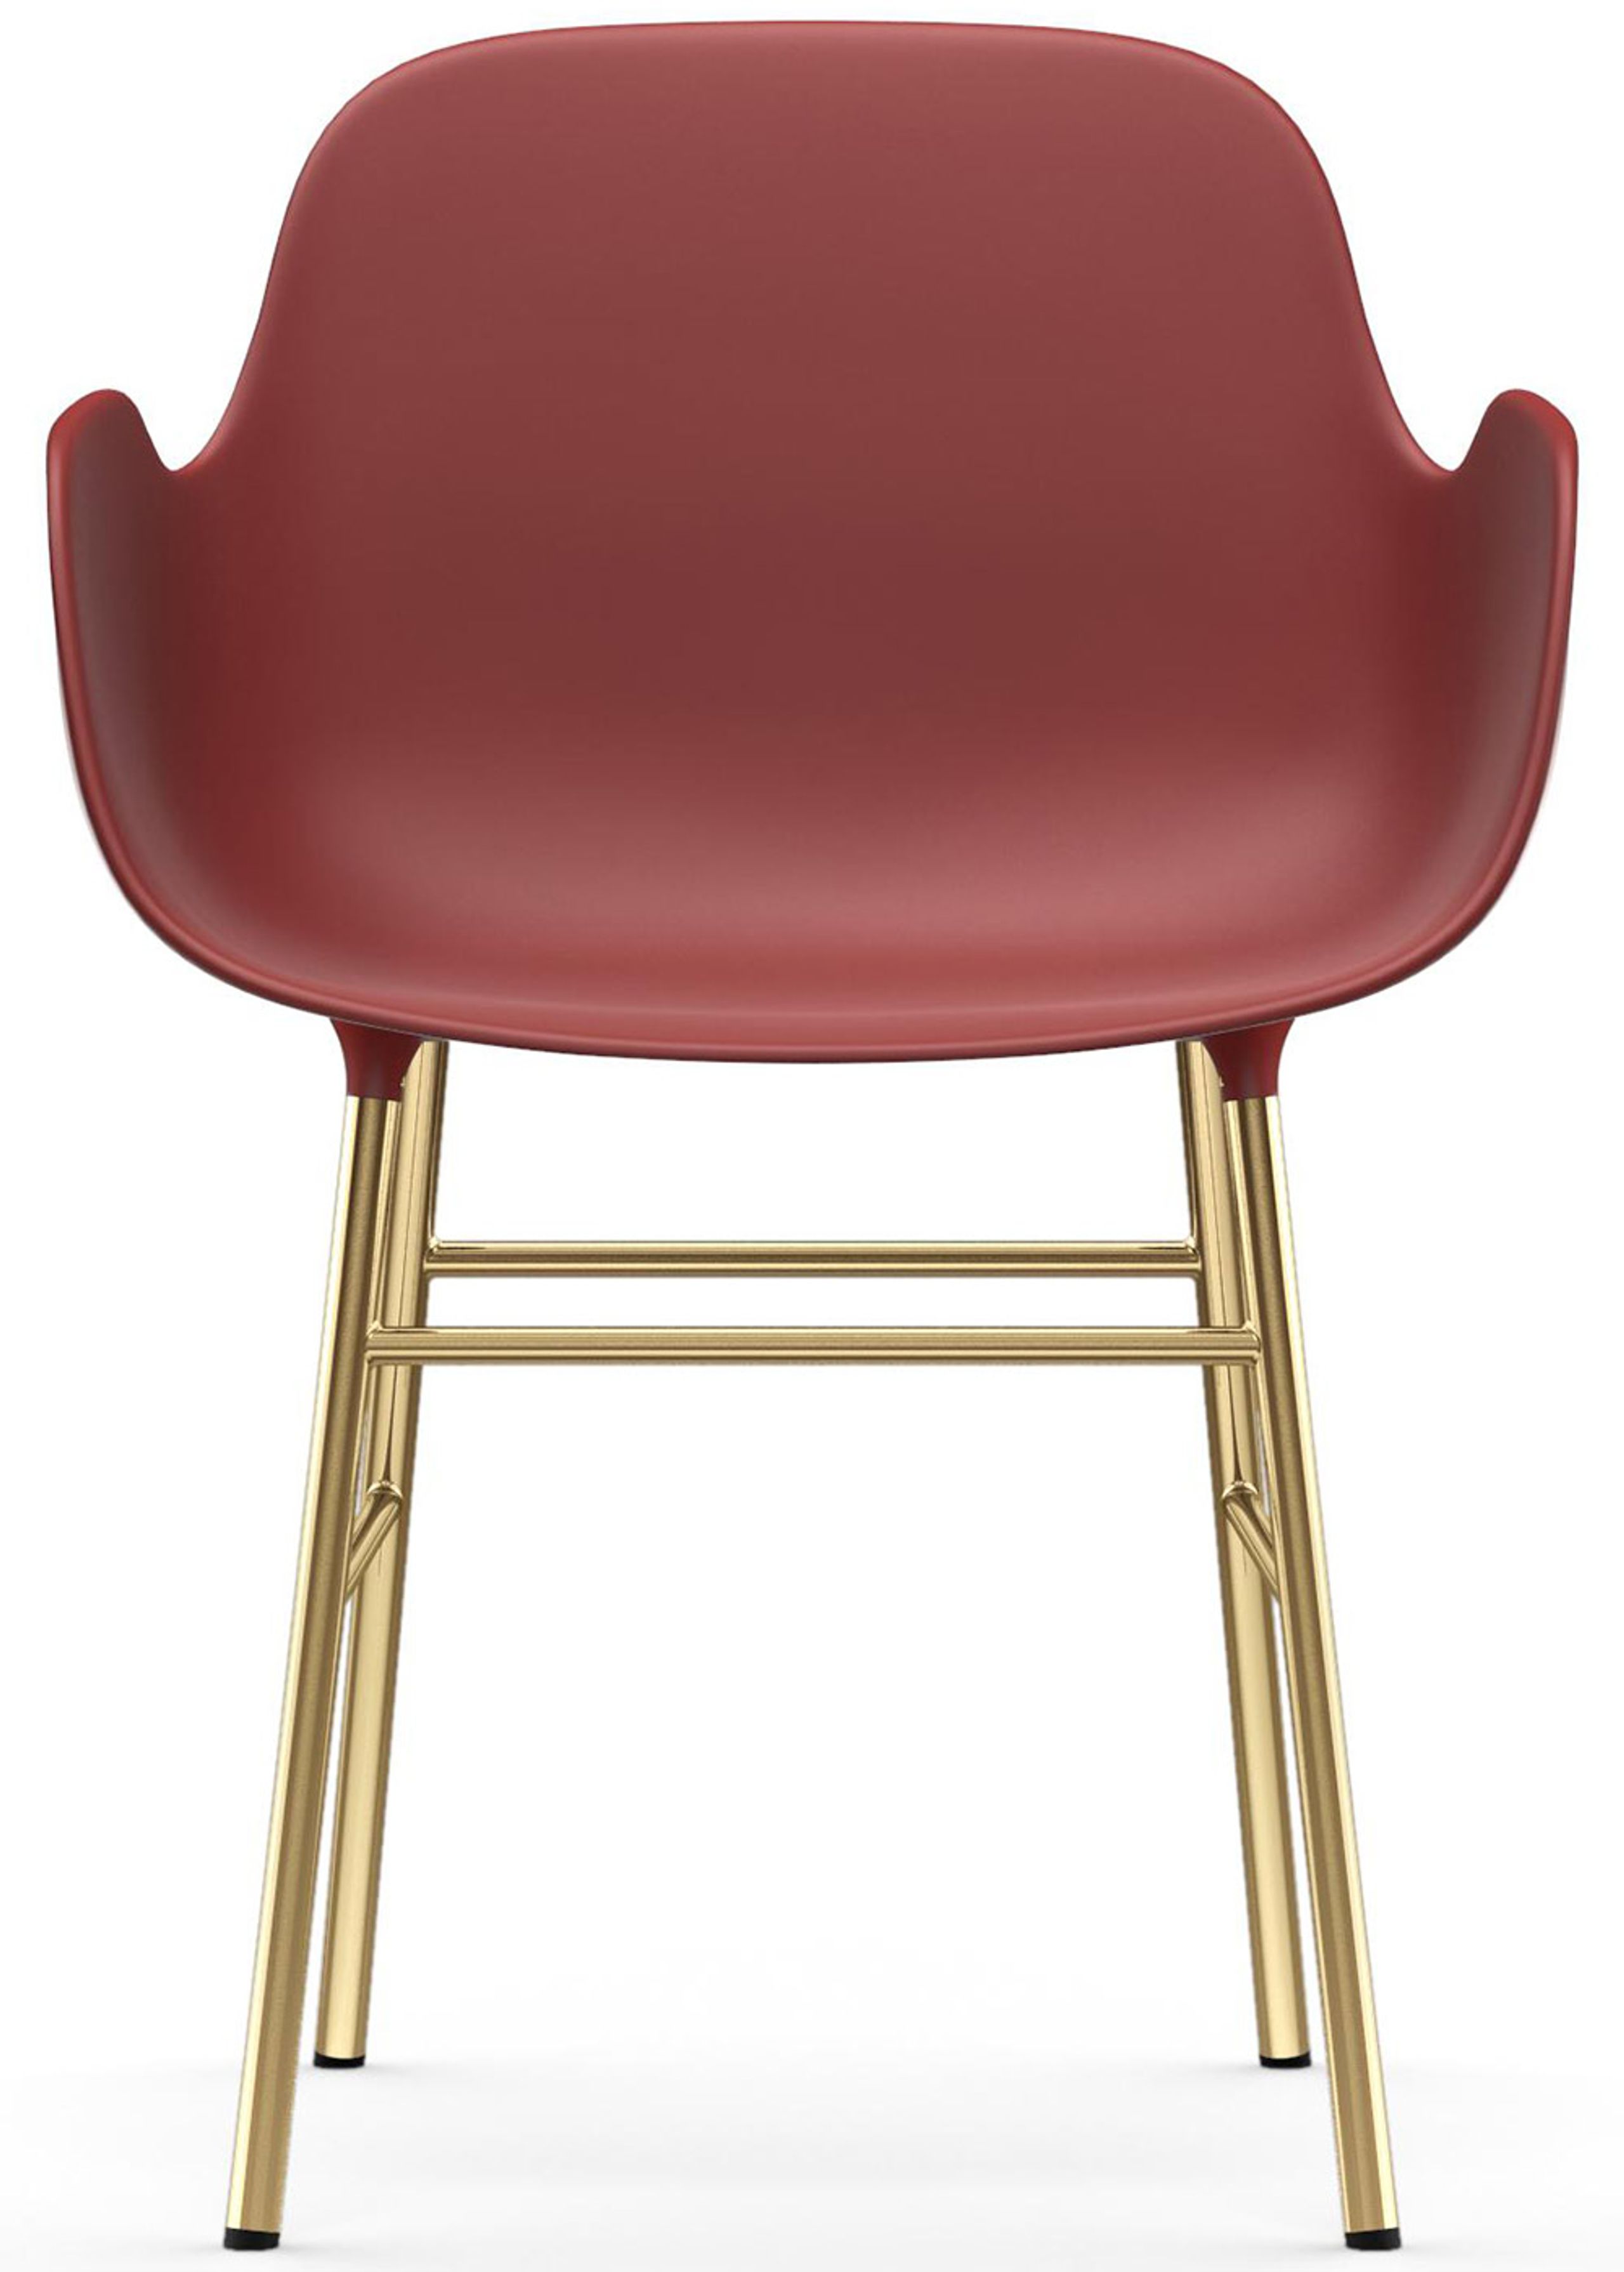 Normann Copenhagen - Poltrona - Form Armchair - Steel, Chrome & Brass - Brass / Red